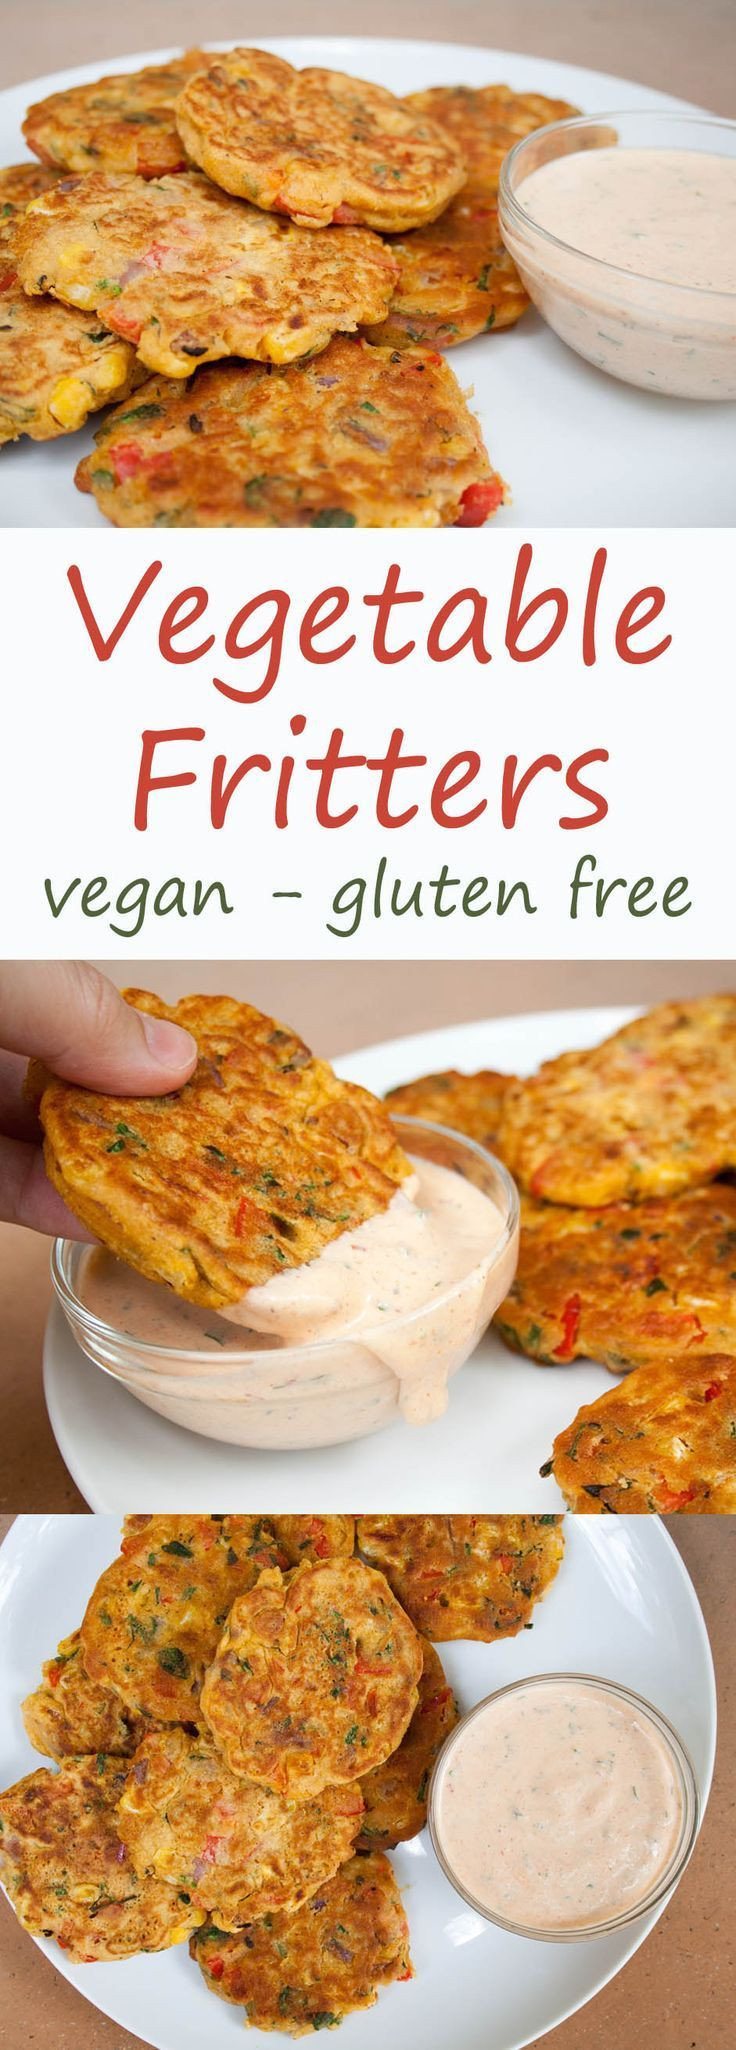 Vegan Gluten Free Appetizers
 Best 147 Gluten Free Appetizers images on Pinterest